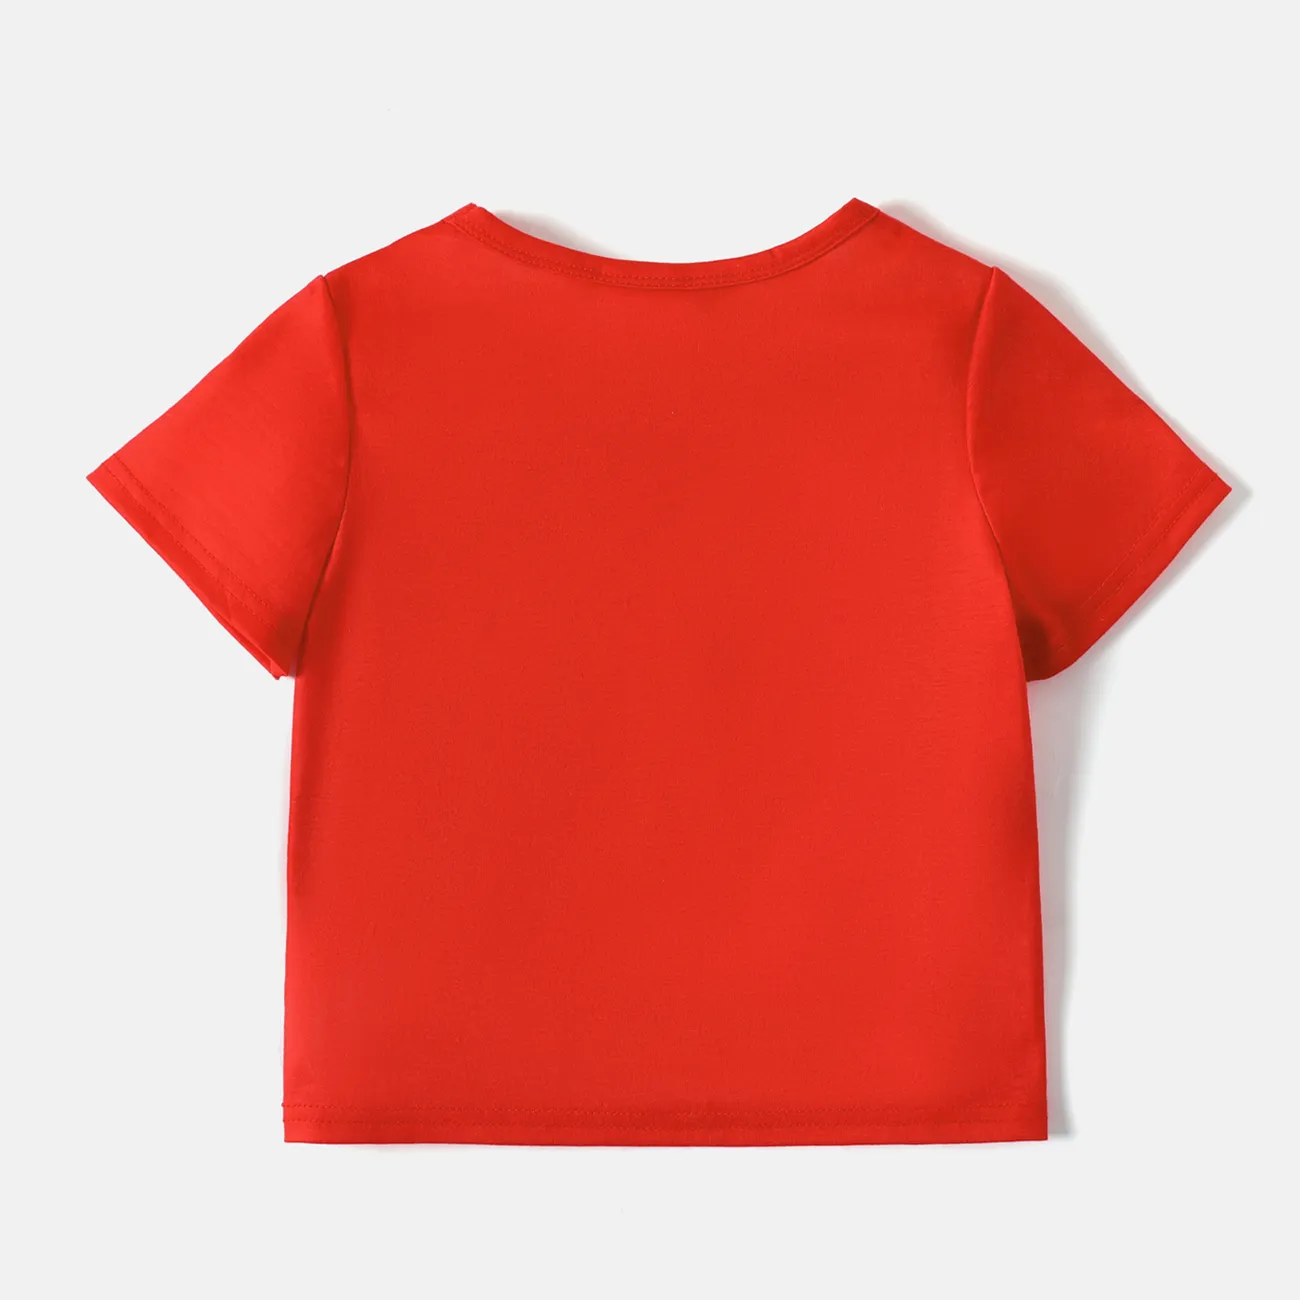 La Squadra dei Cuccioli Bambino piccolo Unisex Infantile Cane Manica corta Maglietta Rosso big image 1